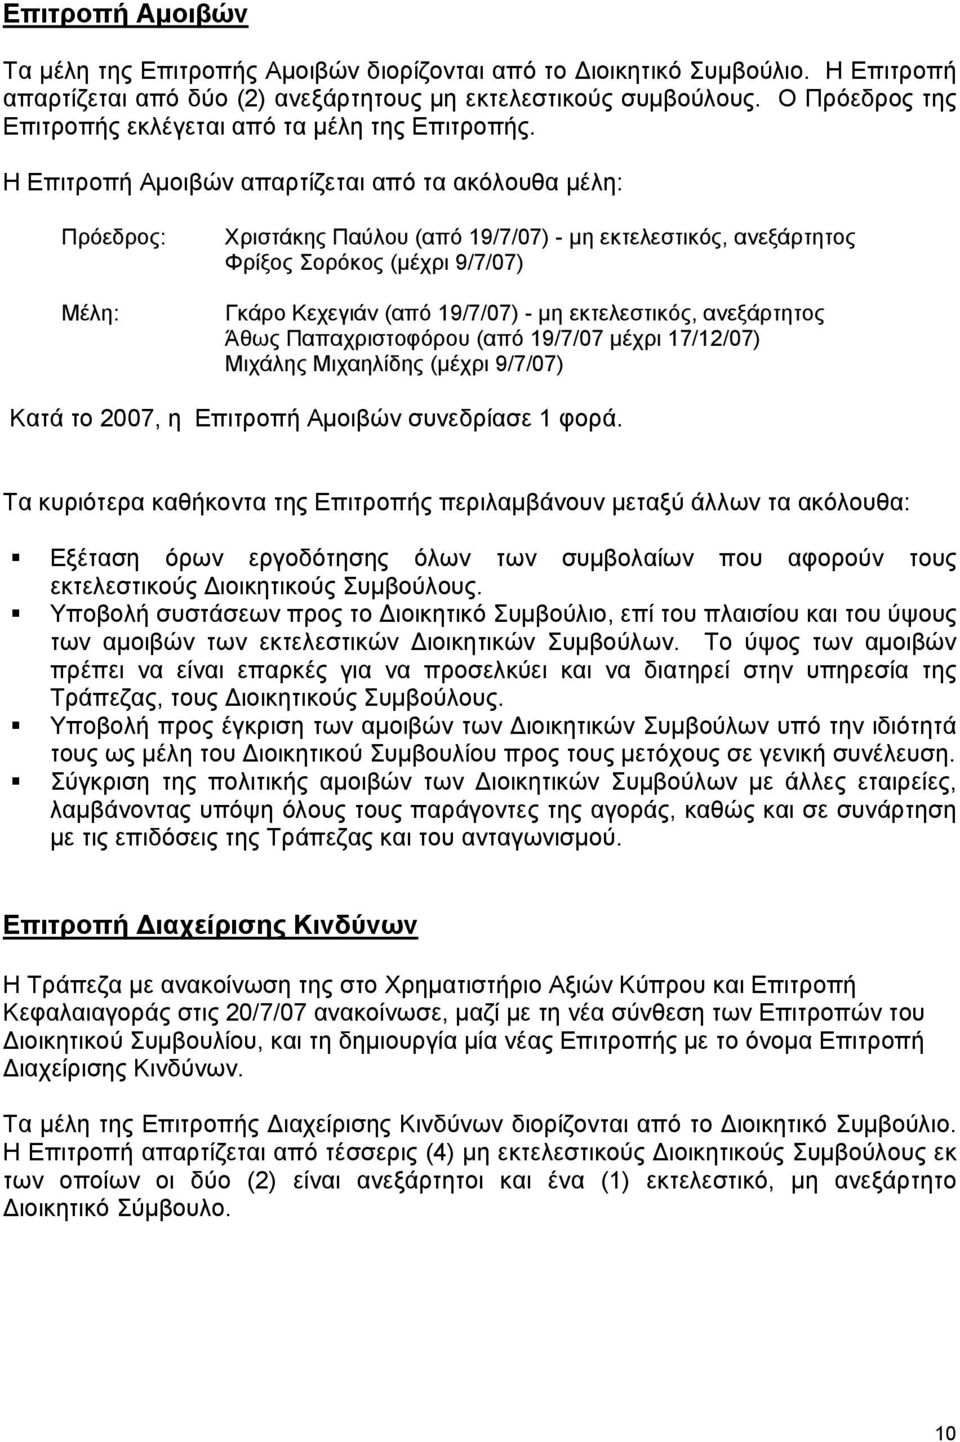 Η Επιτροπή Αμοιβών απαρτίζεται από τα ακόλουθα μέλη: Πρόεδρος: Μέλη: Χριστάκης Παύλου (από 19/7/07) - μη εκτελεστικός, ανεξάρτητος Φρίξος Σορόκος (μέχρι 9/7/07) Γκάρο Κεχεγιάν (από 19/7/07) - μη